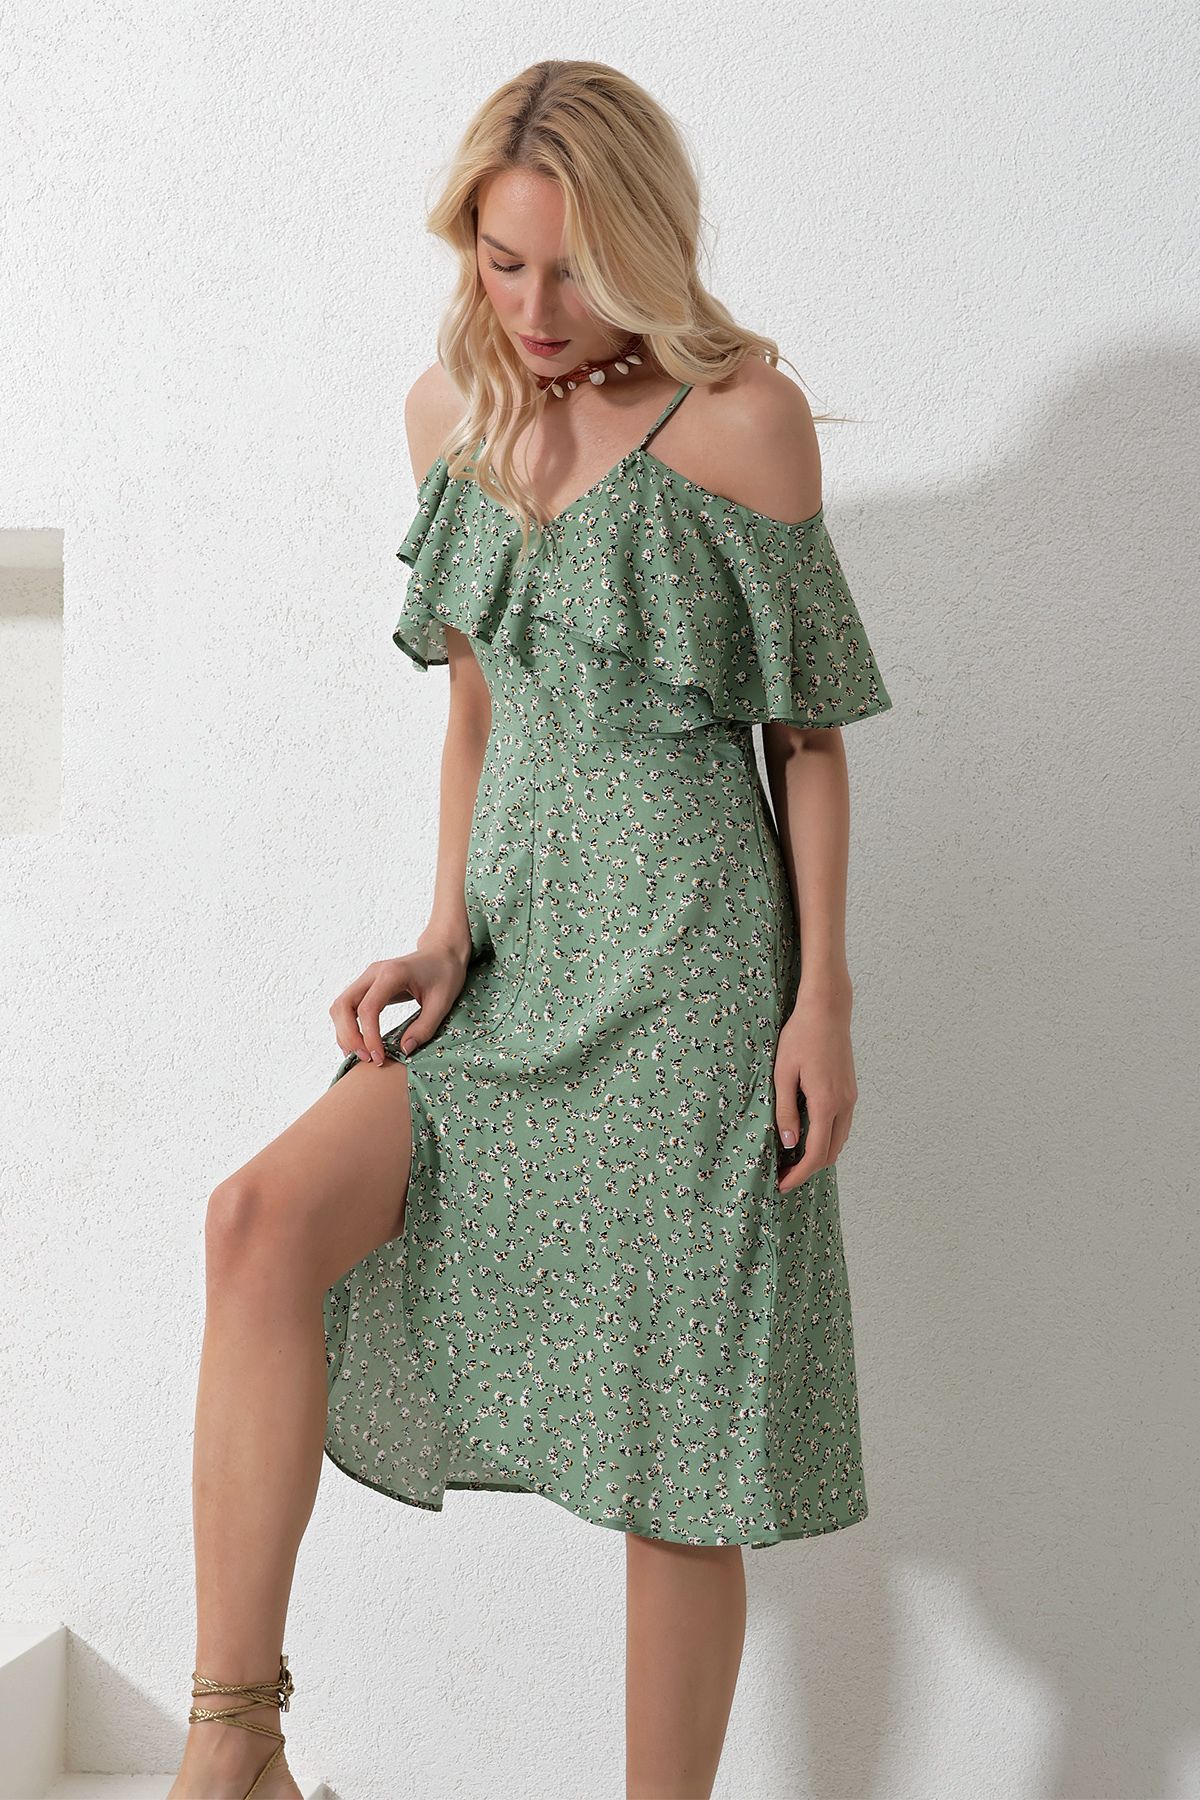 Trend Alaçatı Stili Kadın Haki İp Askılı Önü Fırfırlı Çiçek Desenli Dokuma Elbise Alc-X11743